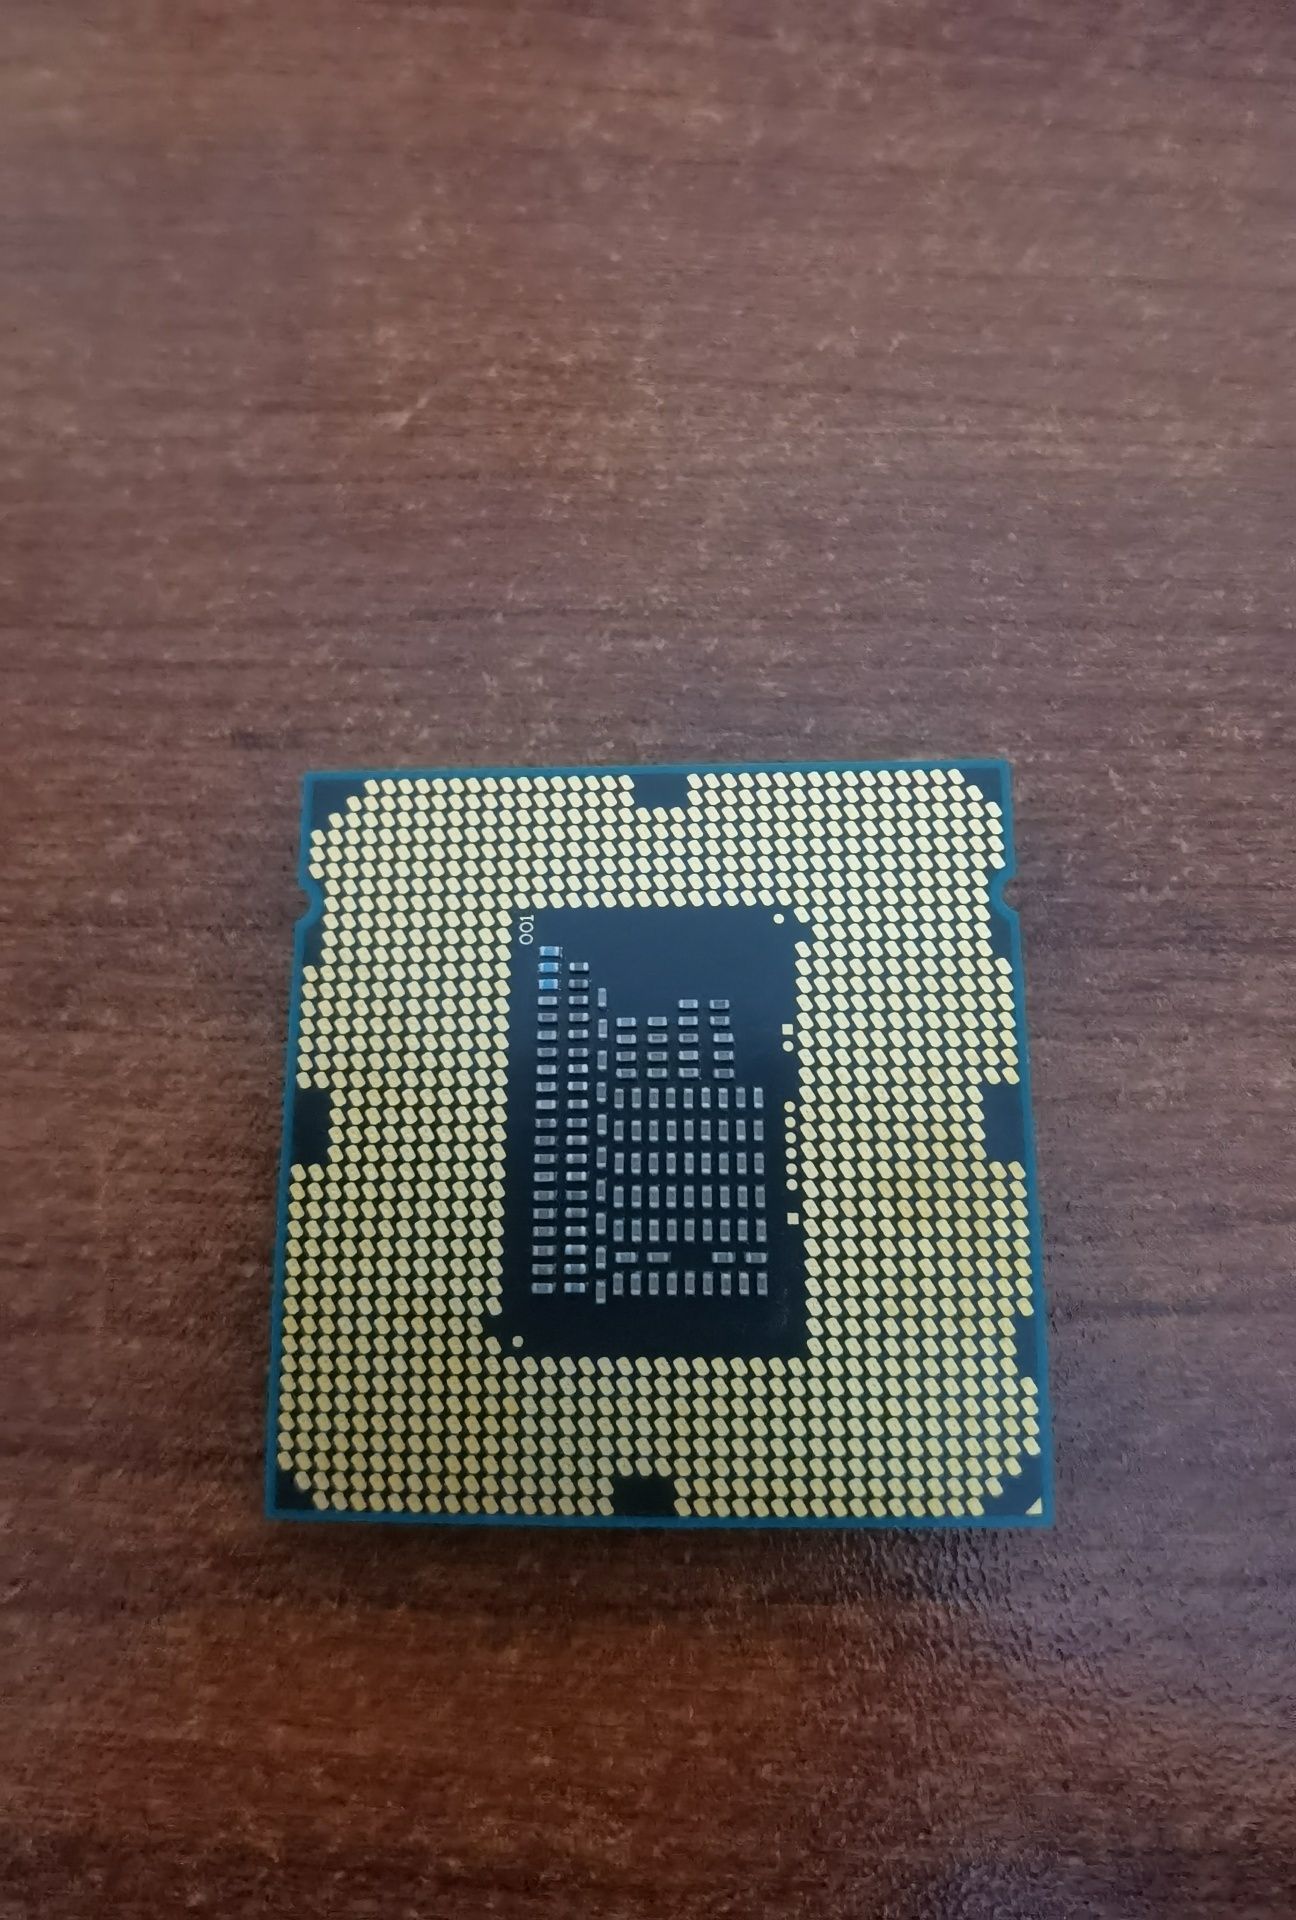 Intel pentium G860